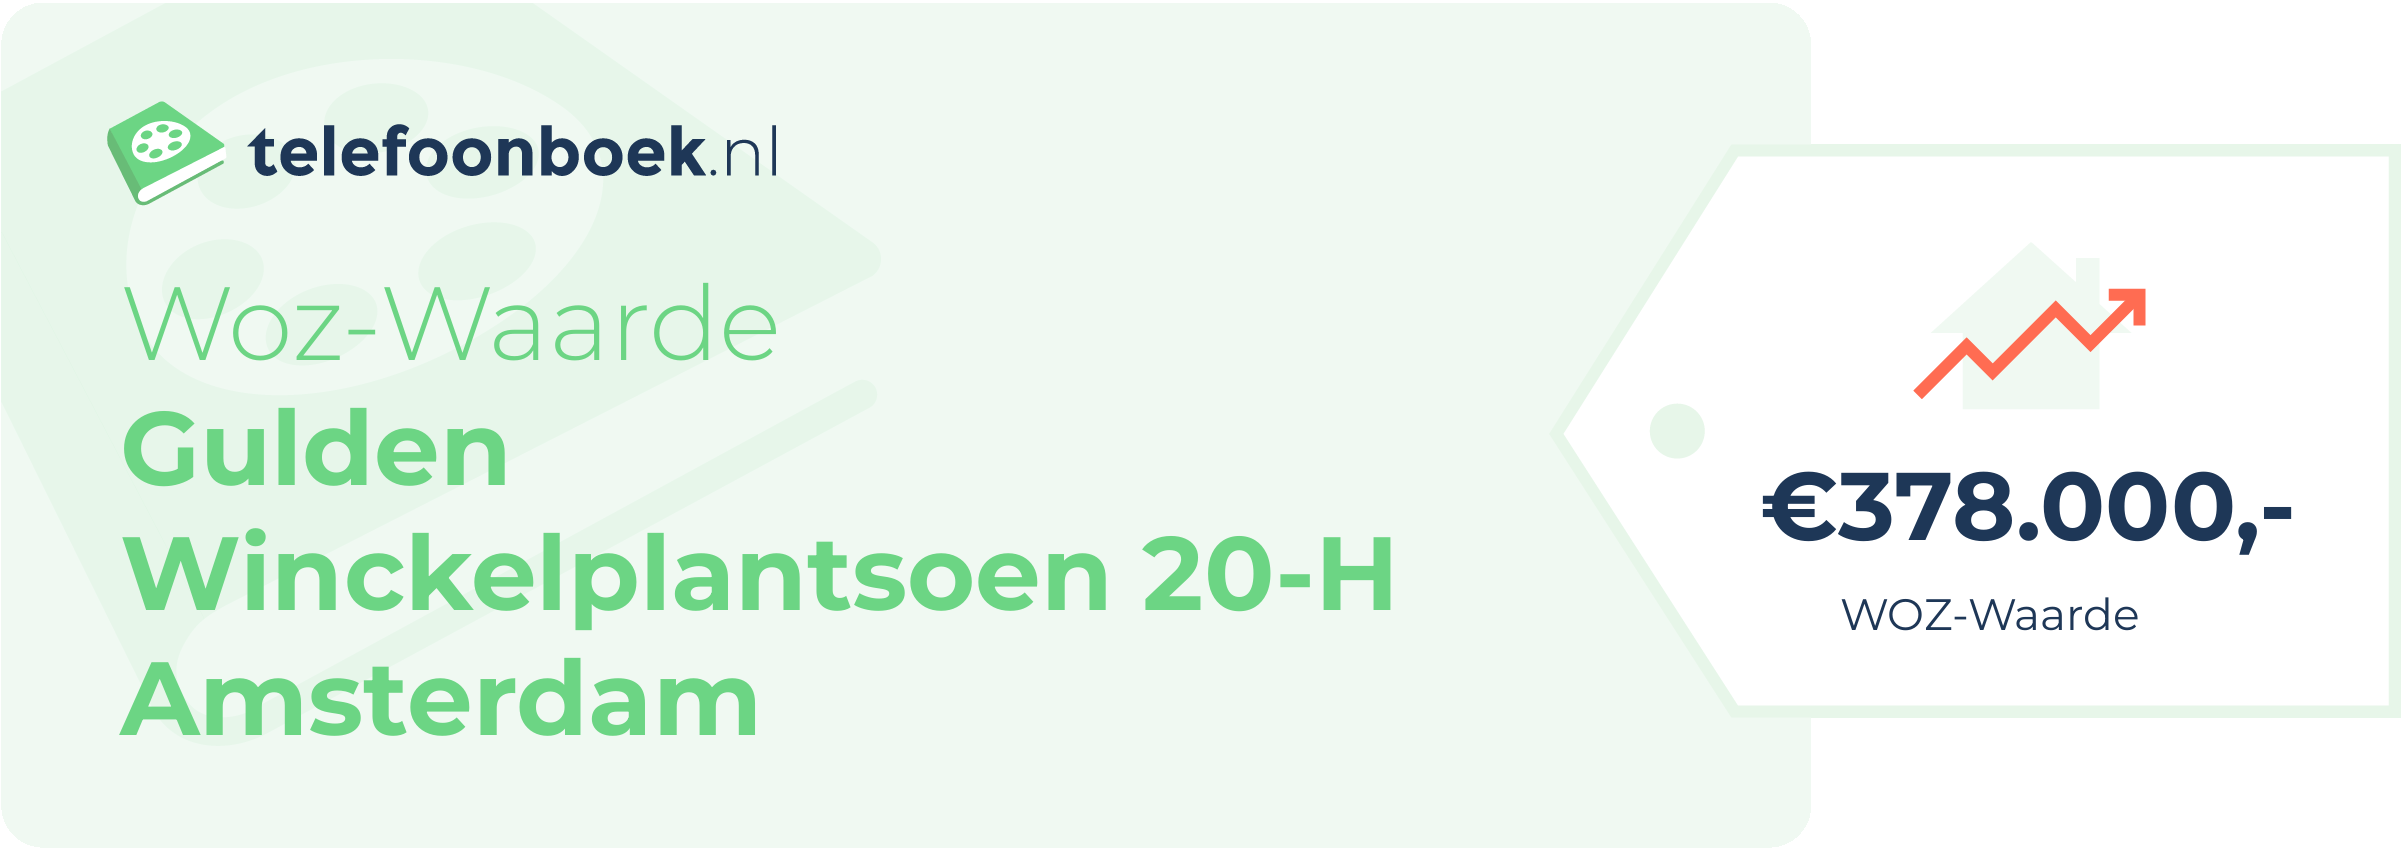 WOZ-waarde Gulden Winckelplantsoen 20-H Amsterdam